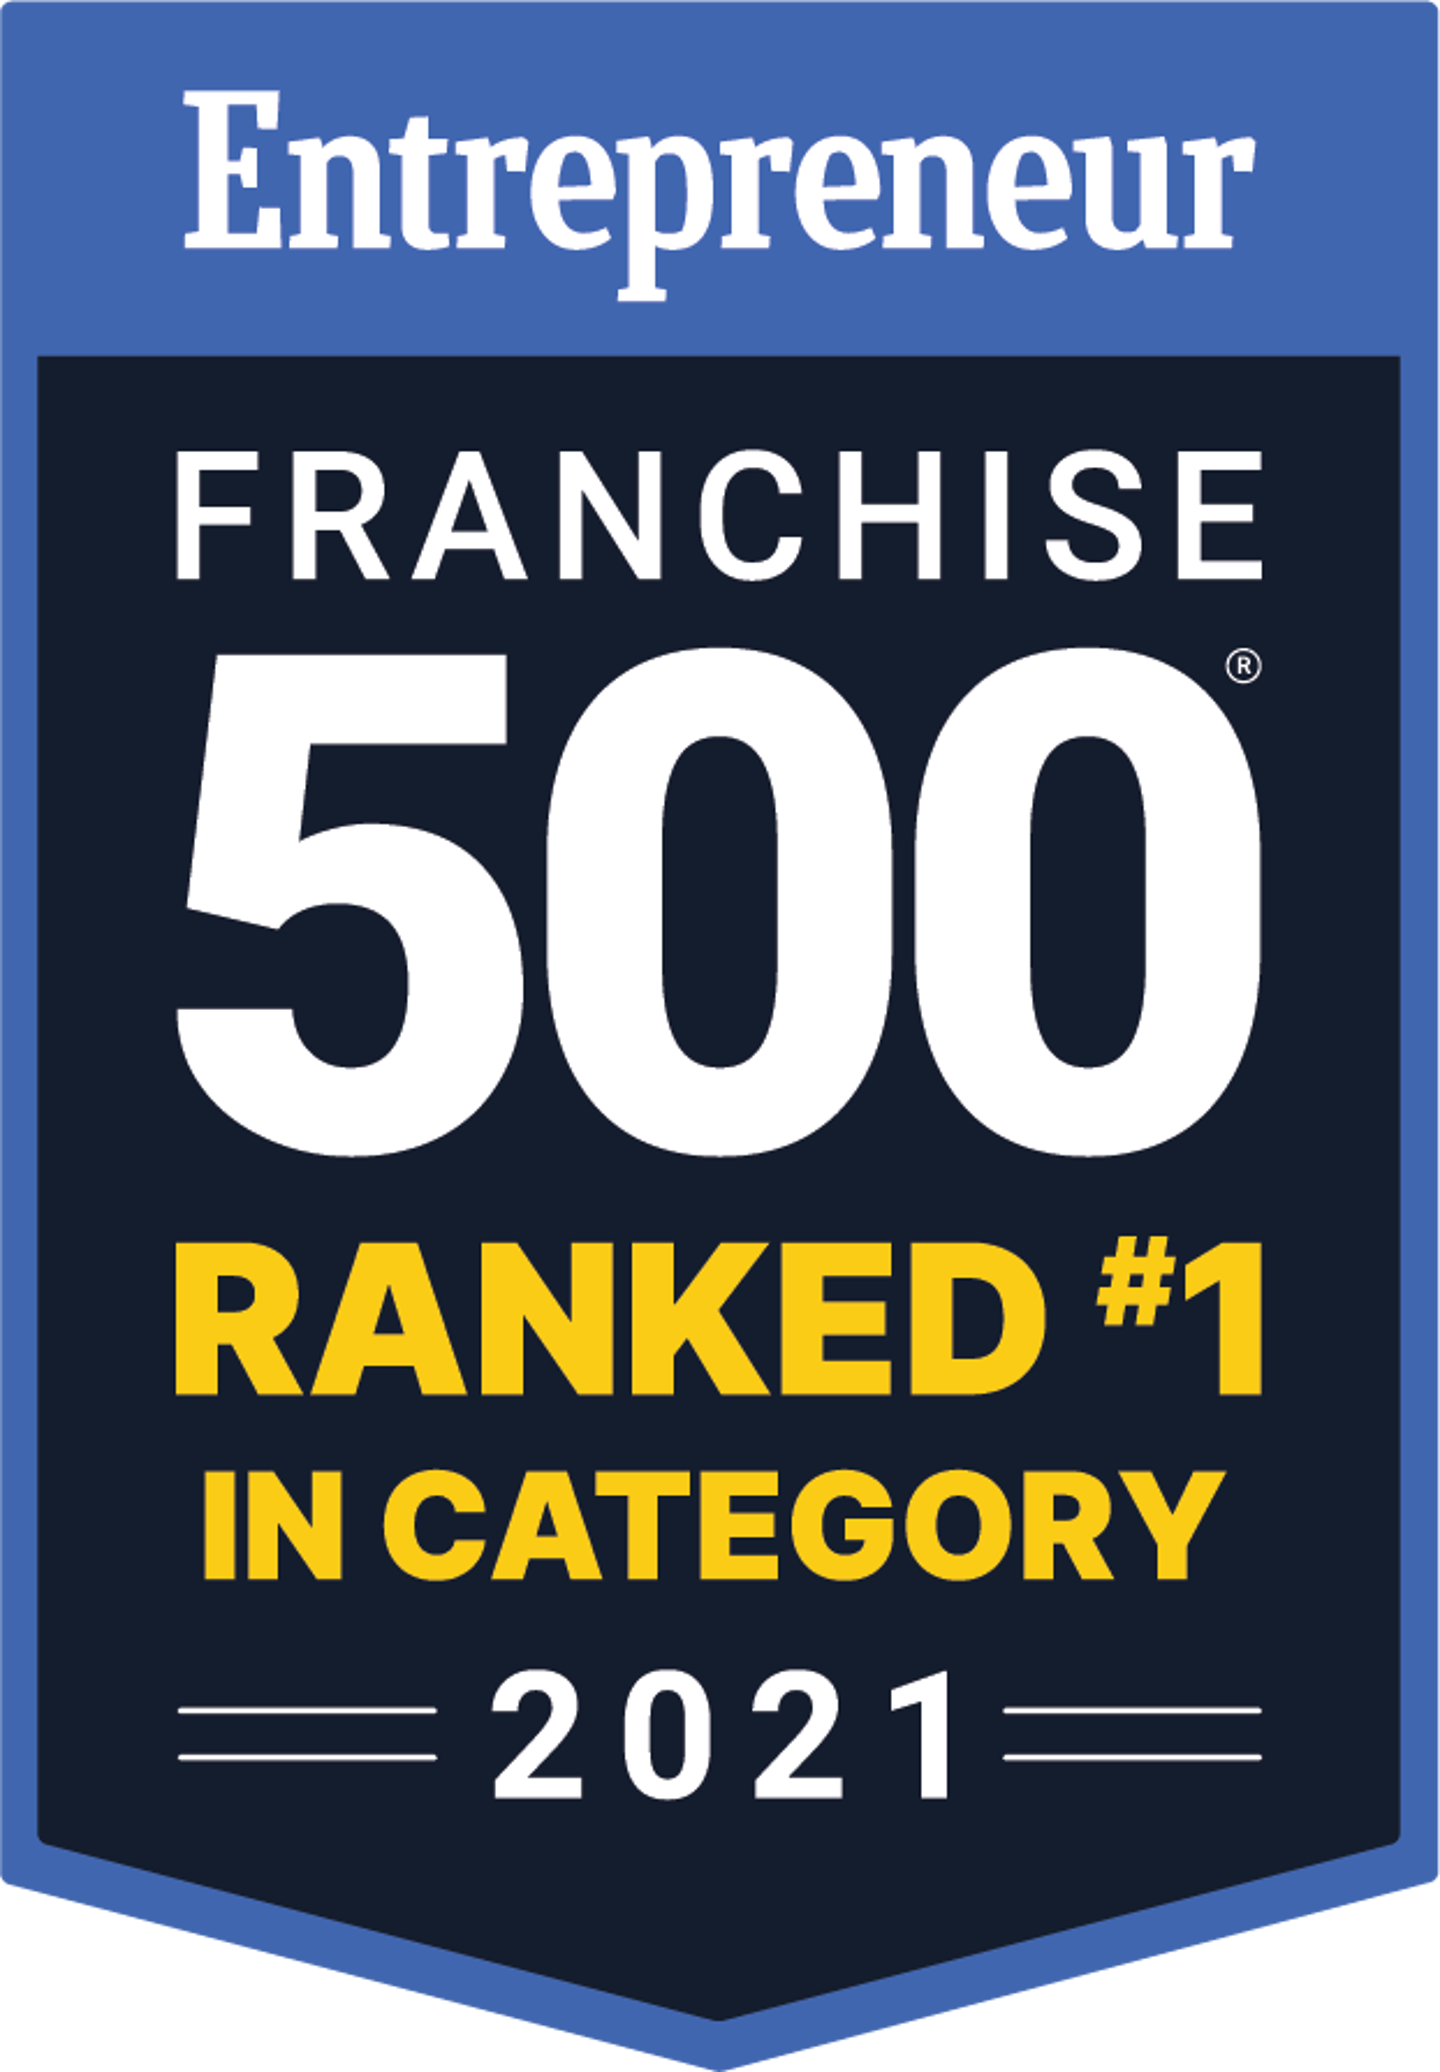 Entrepreneur franchise 500 ranking icon